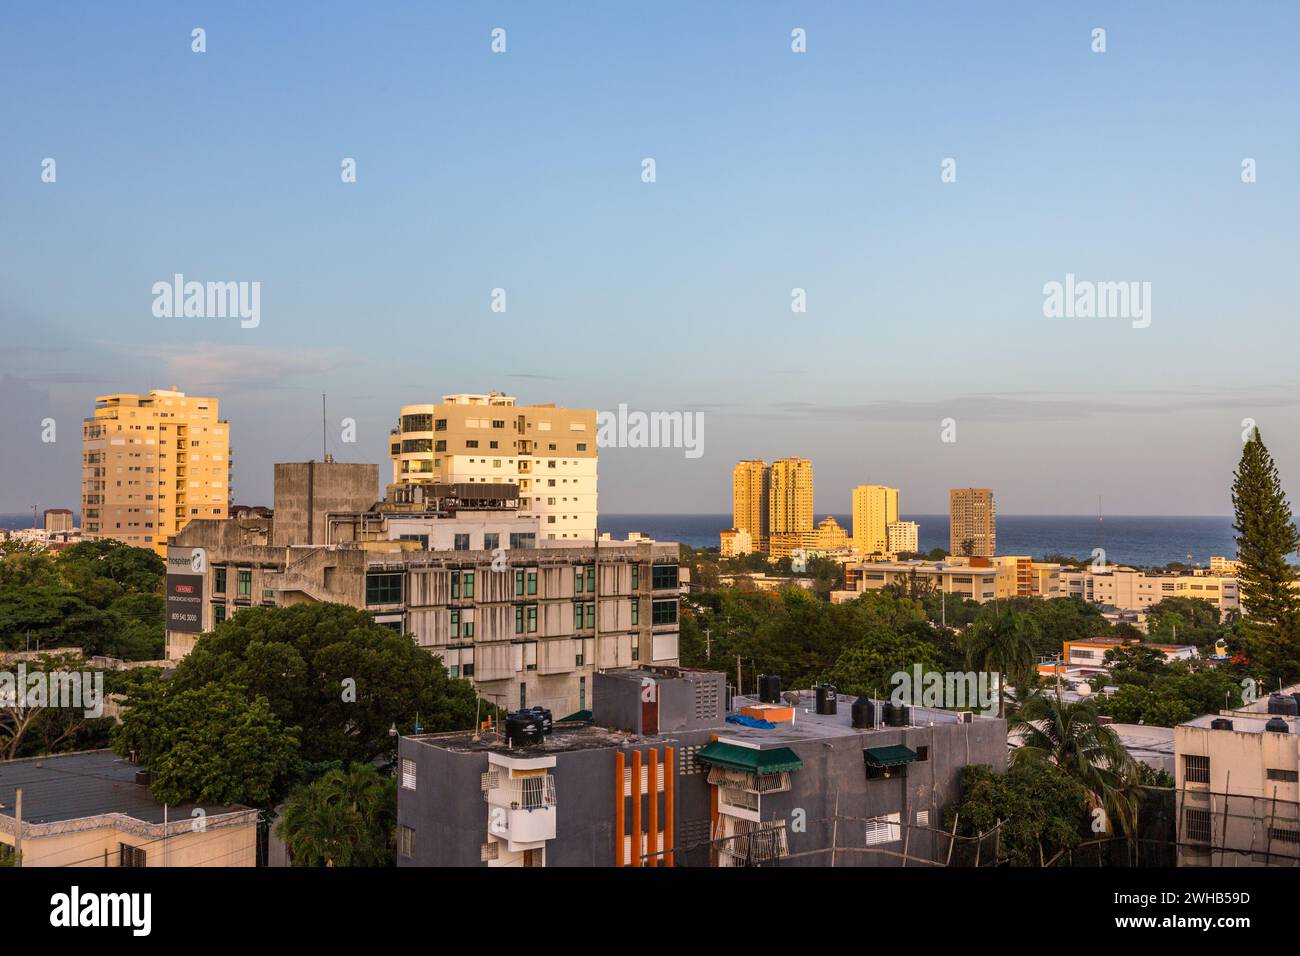 Appartementhäuser im Zentrum von Santo Domingo, Dominikanische Repbulic. Stockfoto